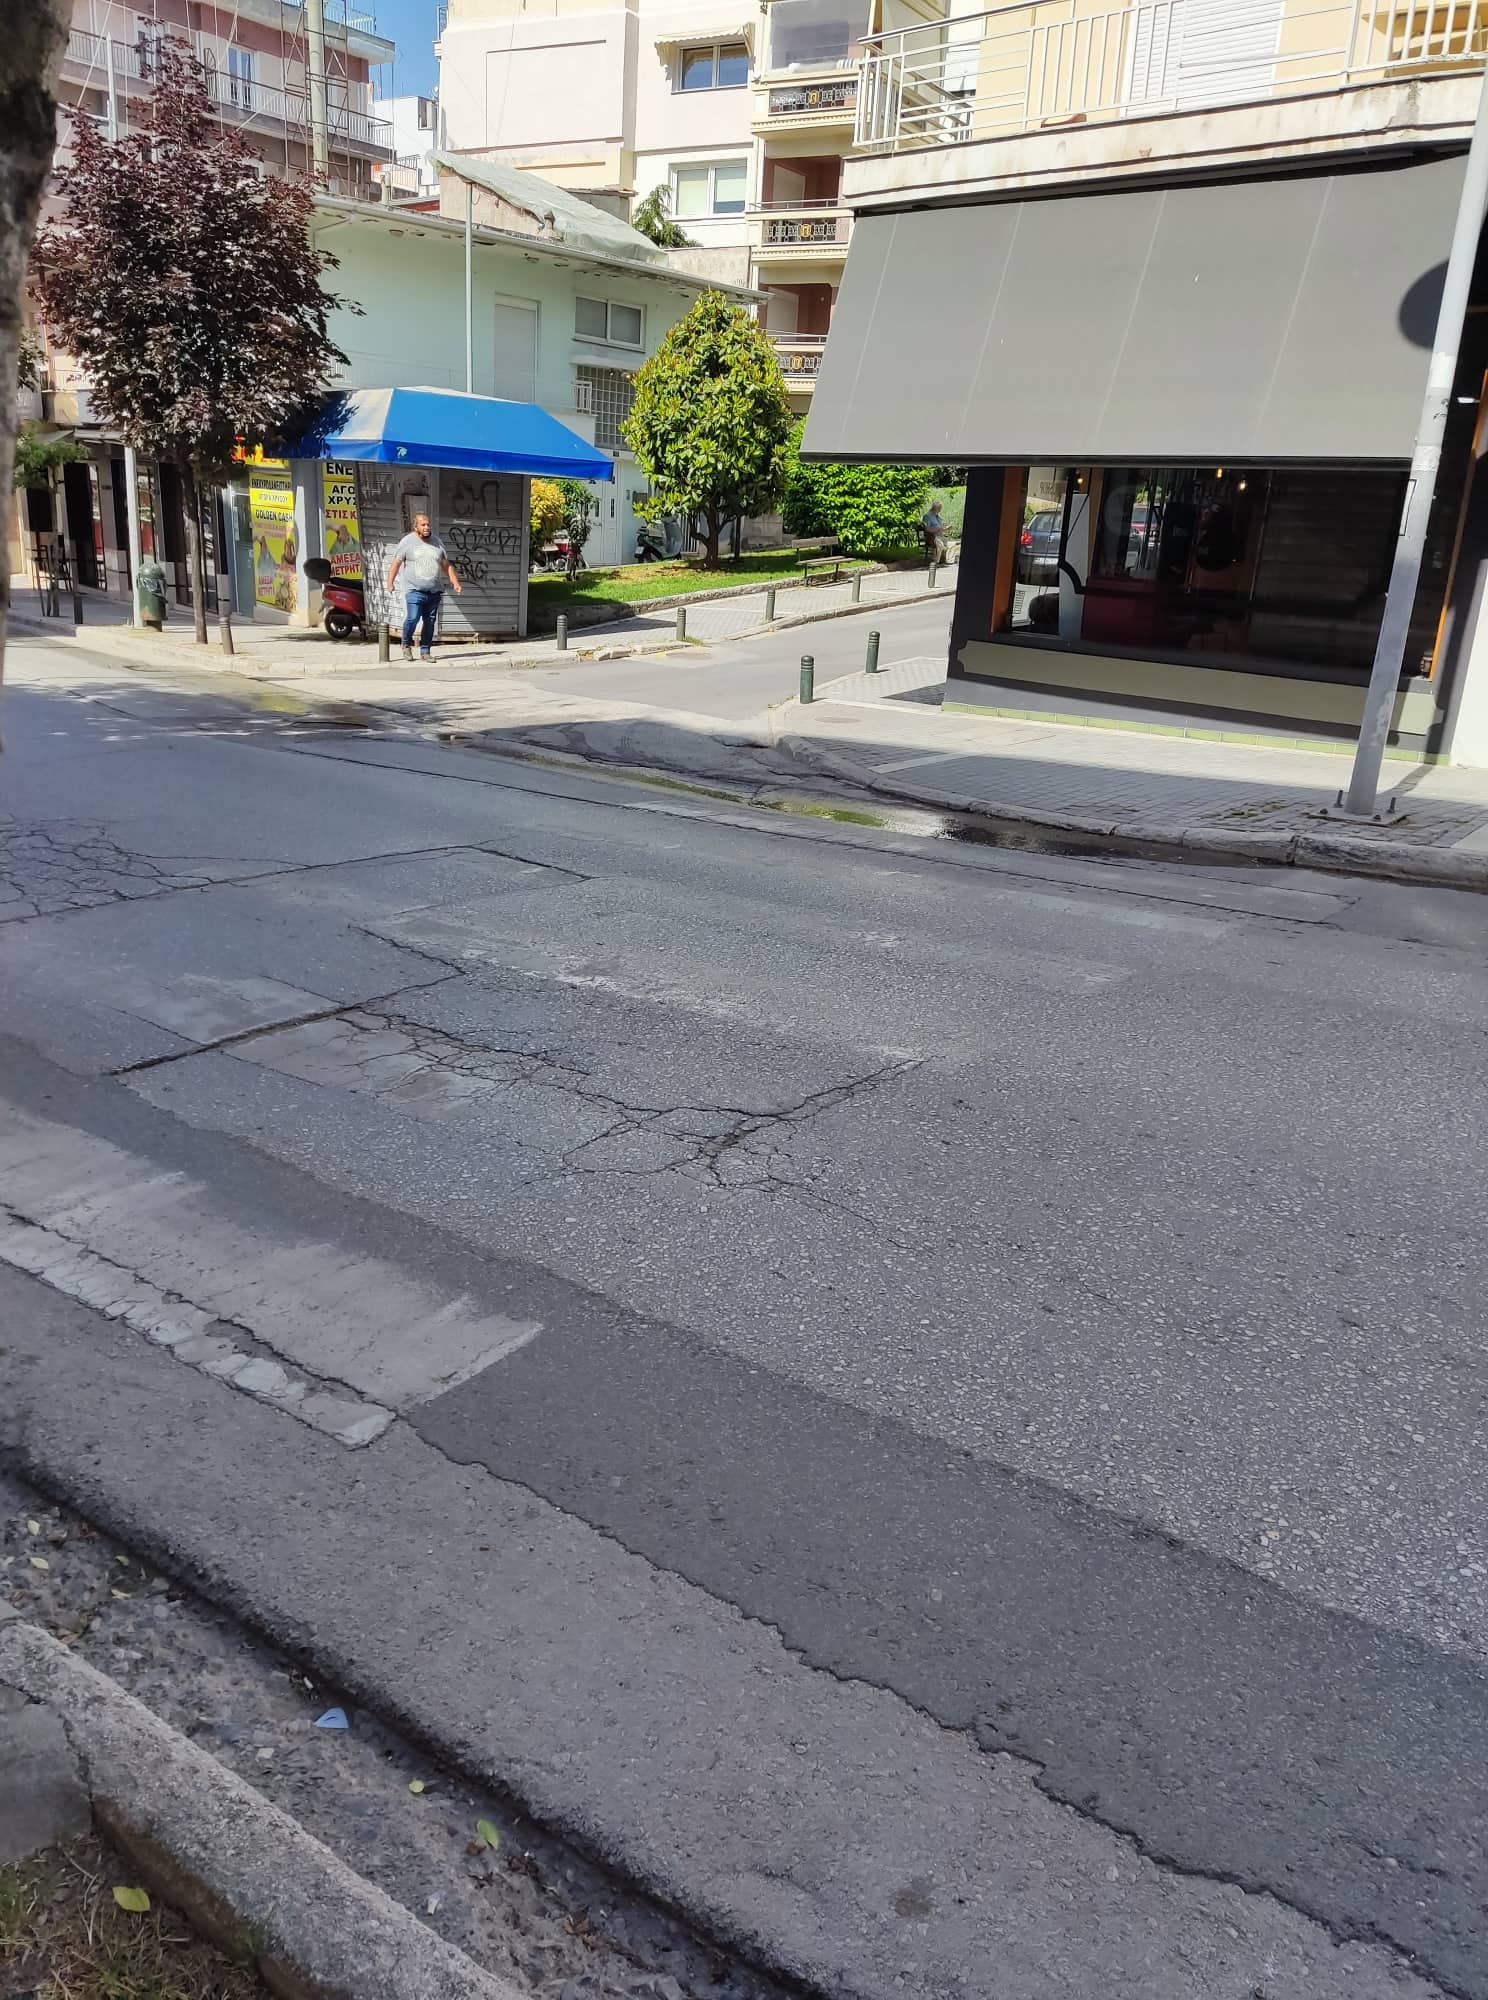 Οι σβησμένες διαγραμμίσεις στους δρόμους της Κοζάνης (και στις κεντρικές αρτηρίες) ισχύουν;